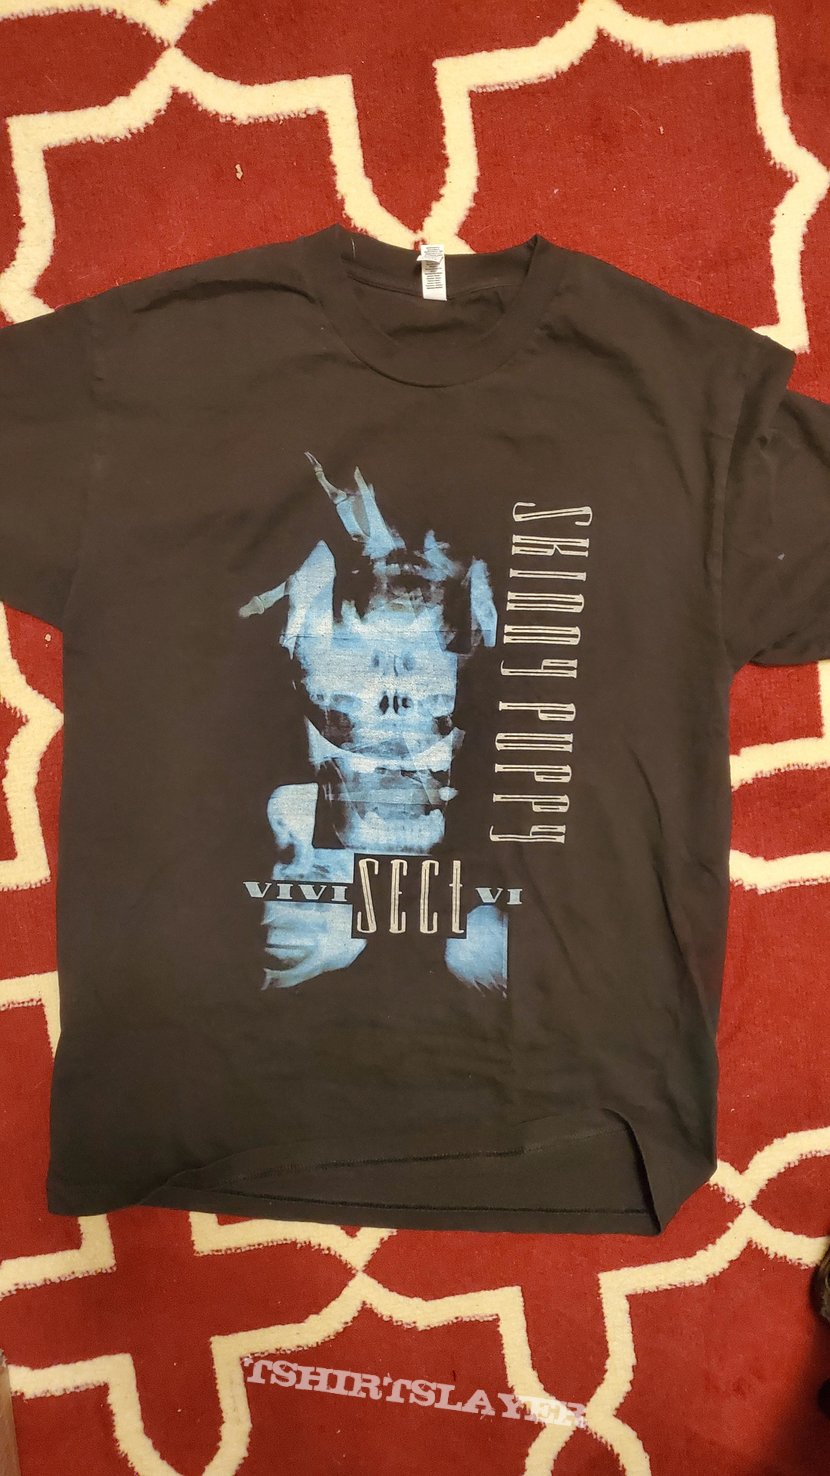 Skinny Puppy Vivisectvi shirt | TShirtSlayer TShirt and BattleJacket ...